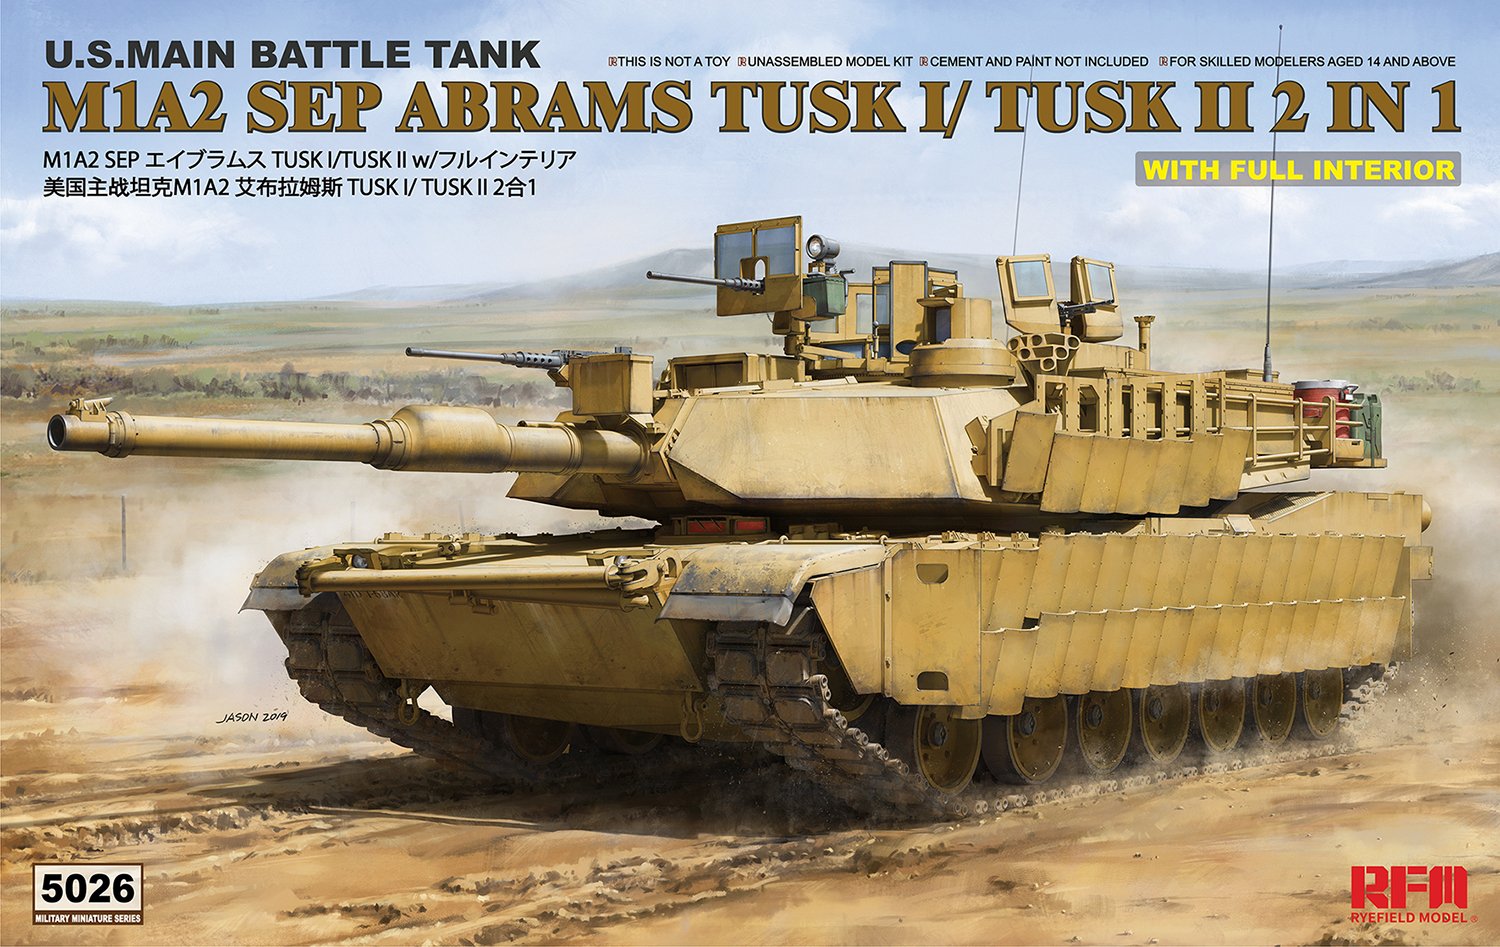 1/35 现代美国 M1A2 SEP TUSK I/TUSK II 艾布拉姆斯主战坦克(全内构) - 点击图像关闭